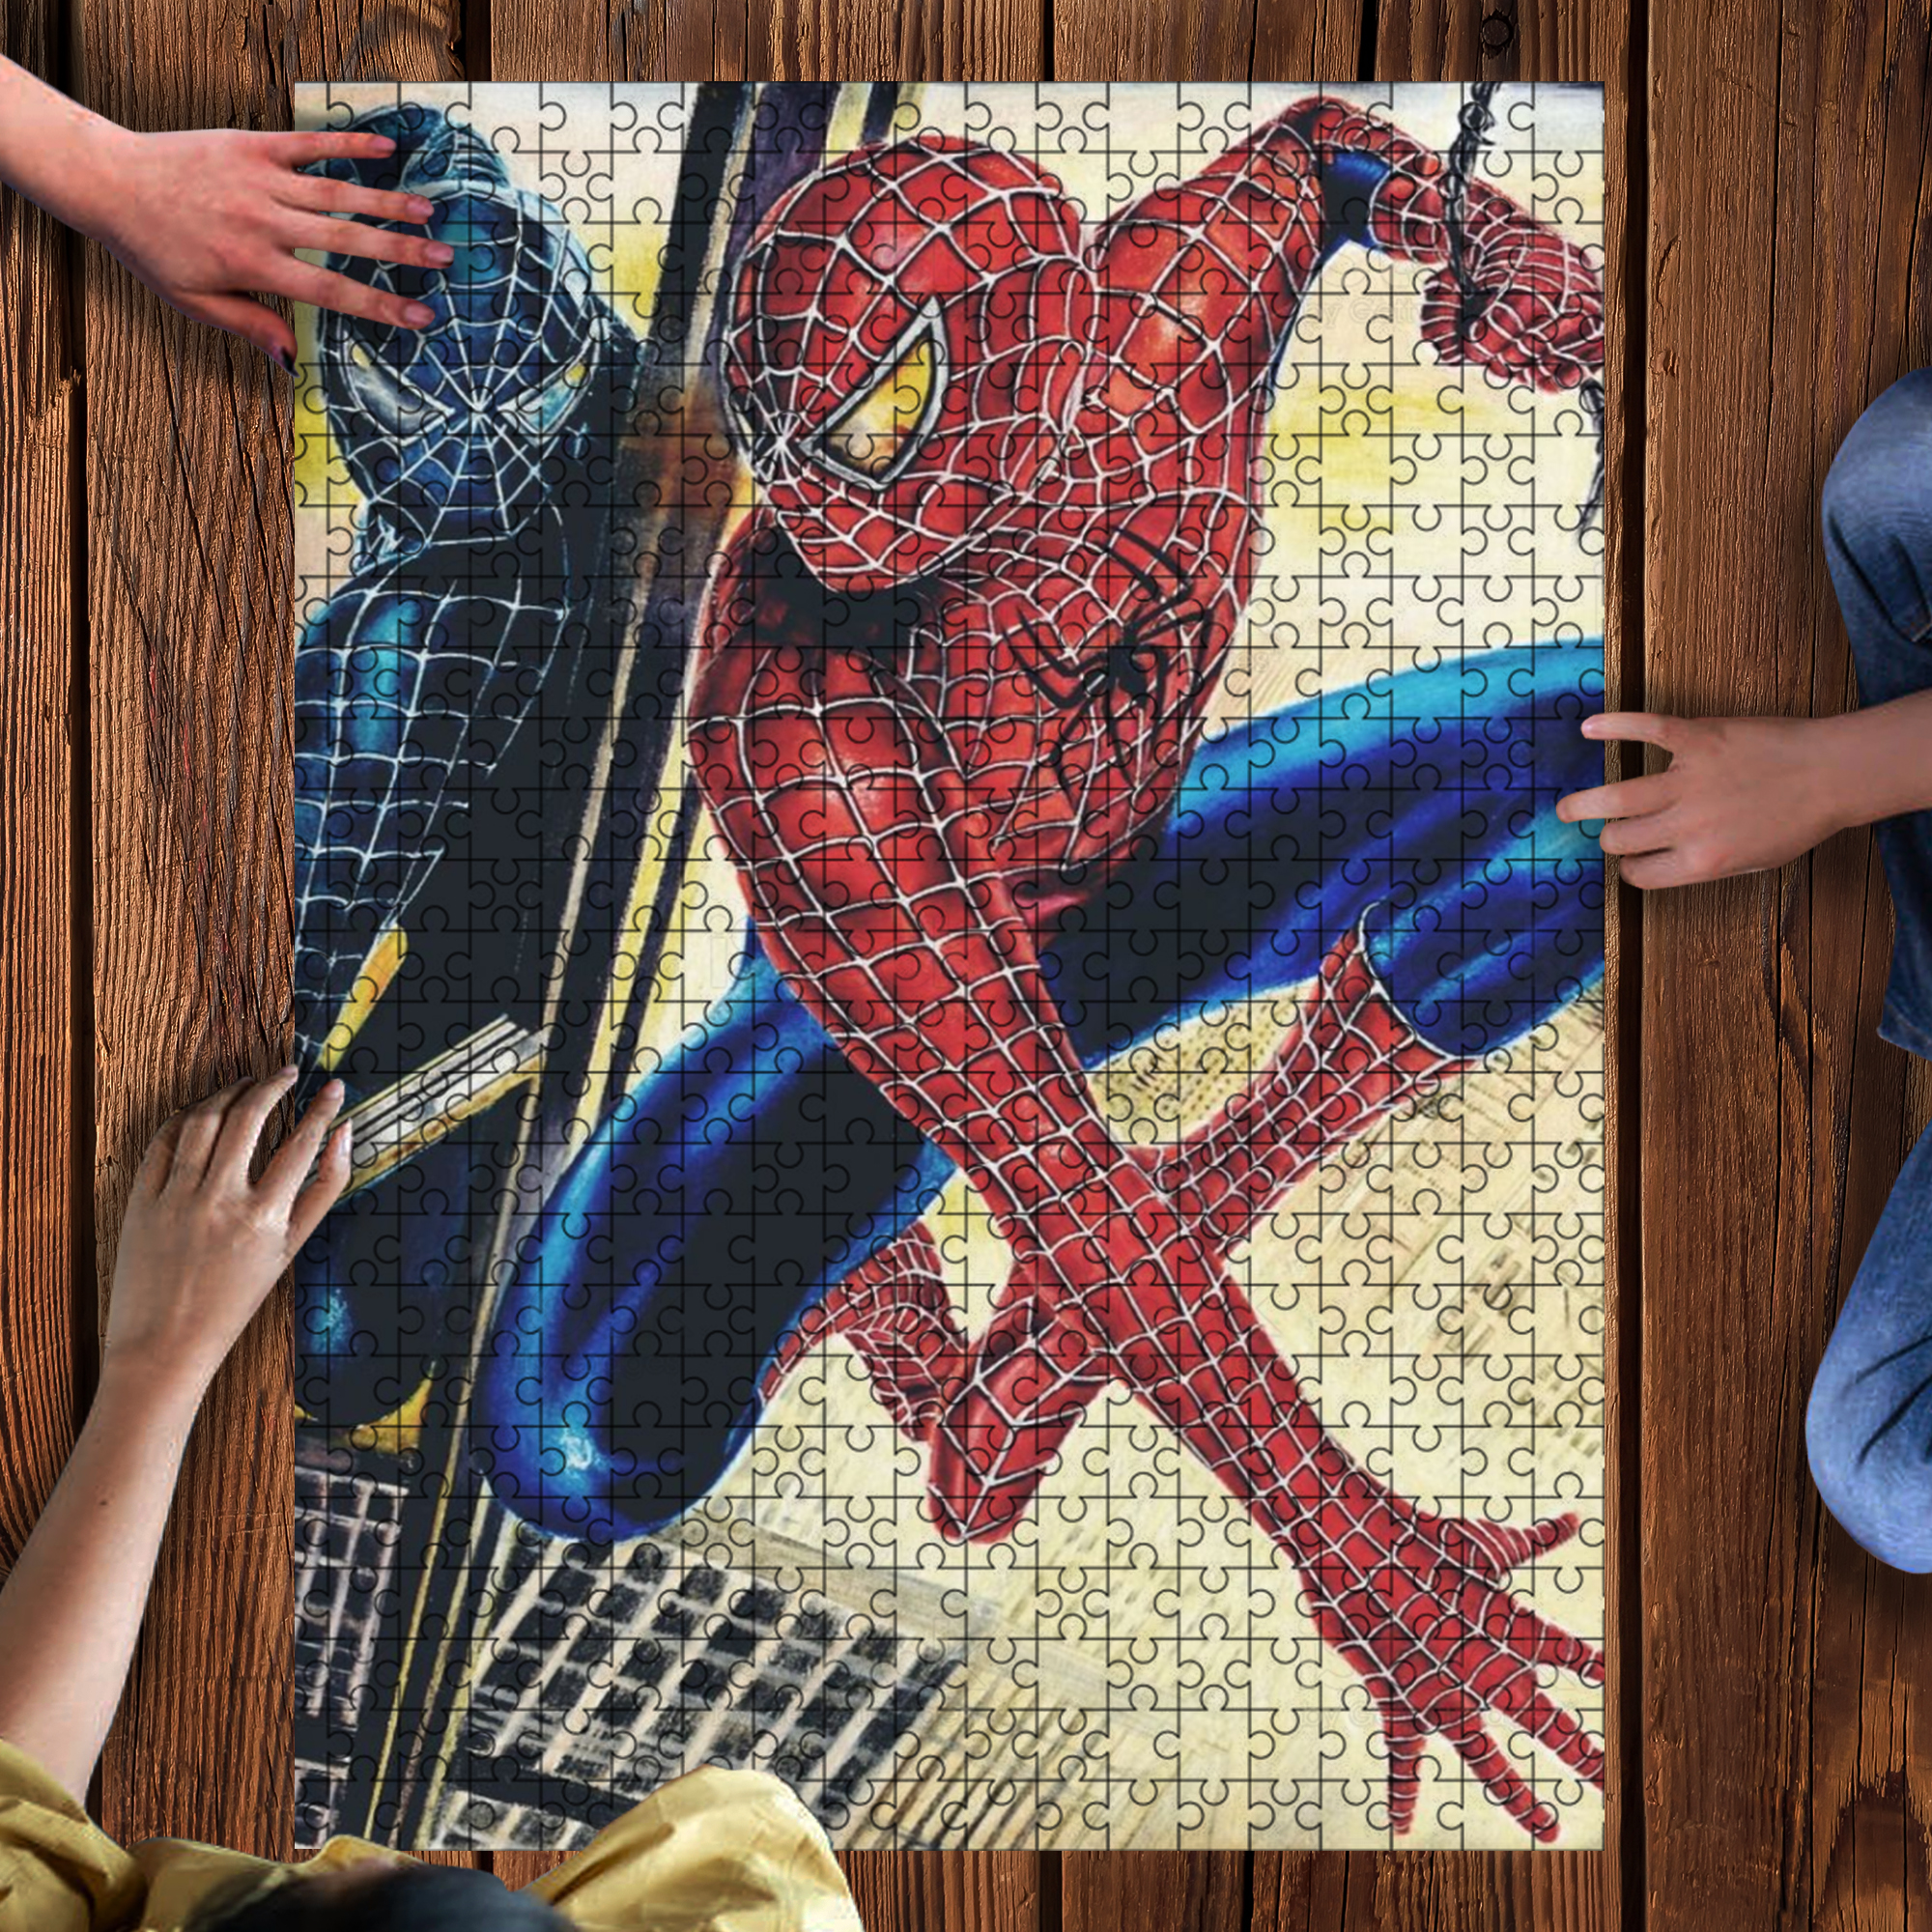 Venom spider-man 3 jigsaw puzzle 1